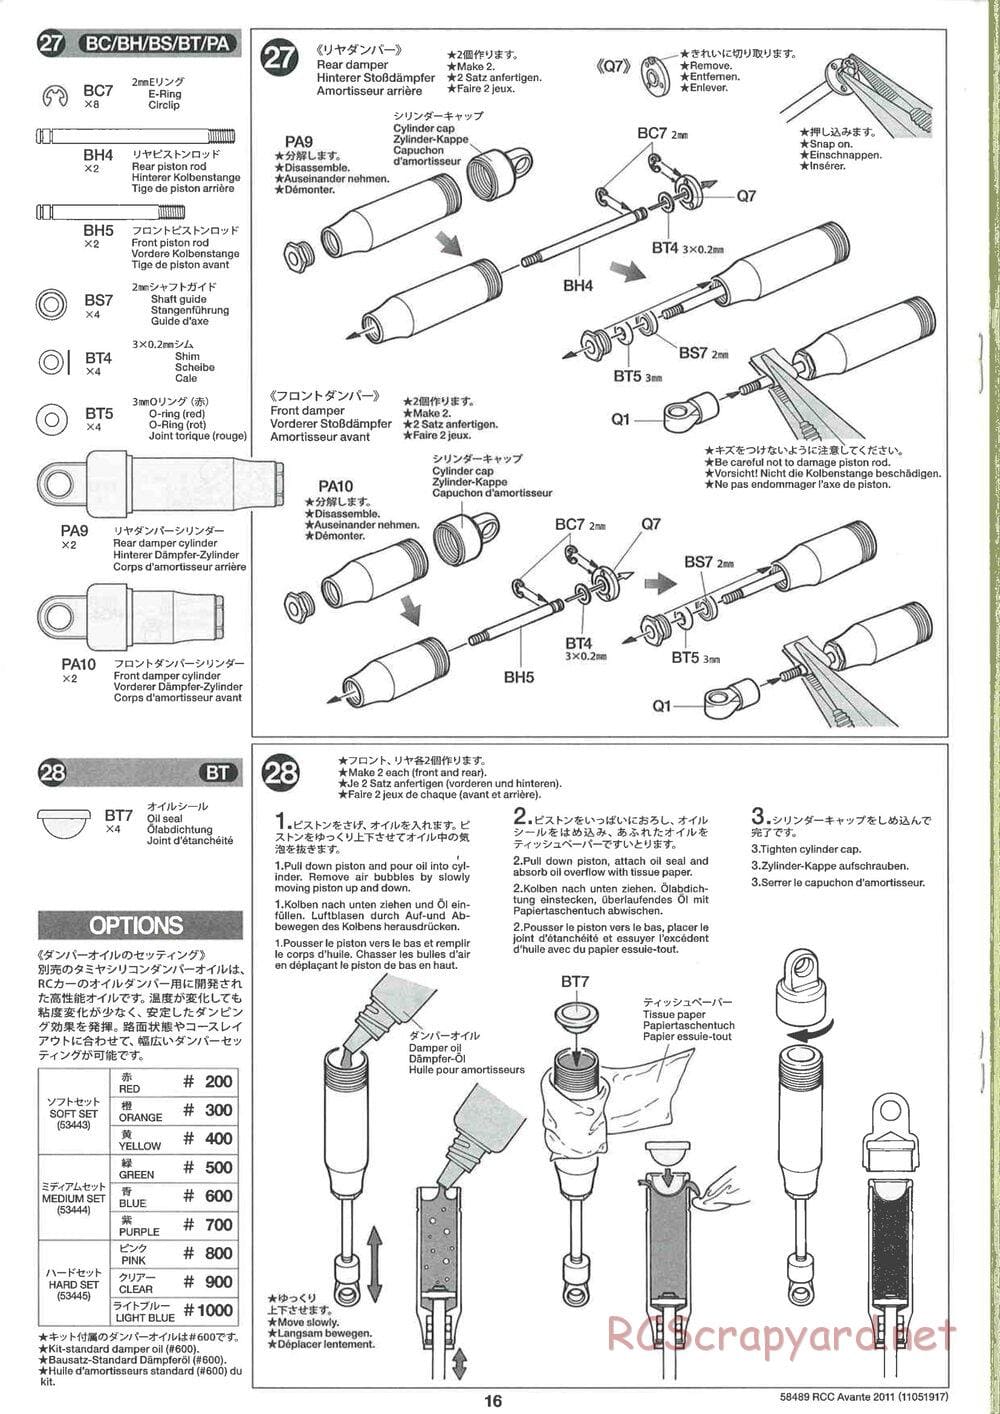 Tamiya - Avante 2011 - AV Chassis - Manual - Page 16